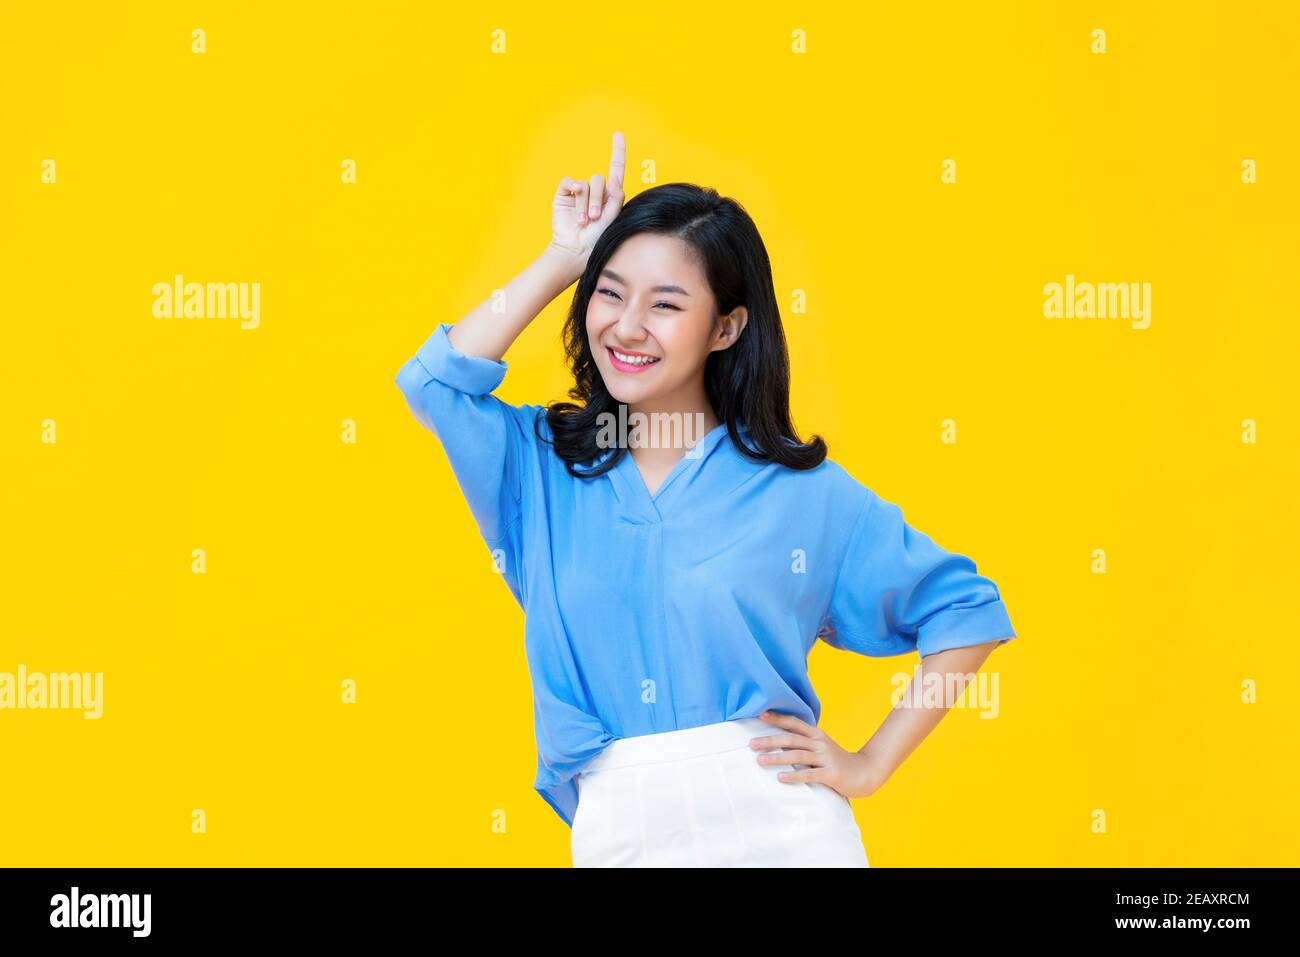 Jeune femme asiatique gaie dans des vêtements décontractés debout avec un main à la taille tandis que d'autres gesturing élevé elle est la meilleur sur fond jaune Banque D'Images